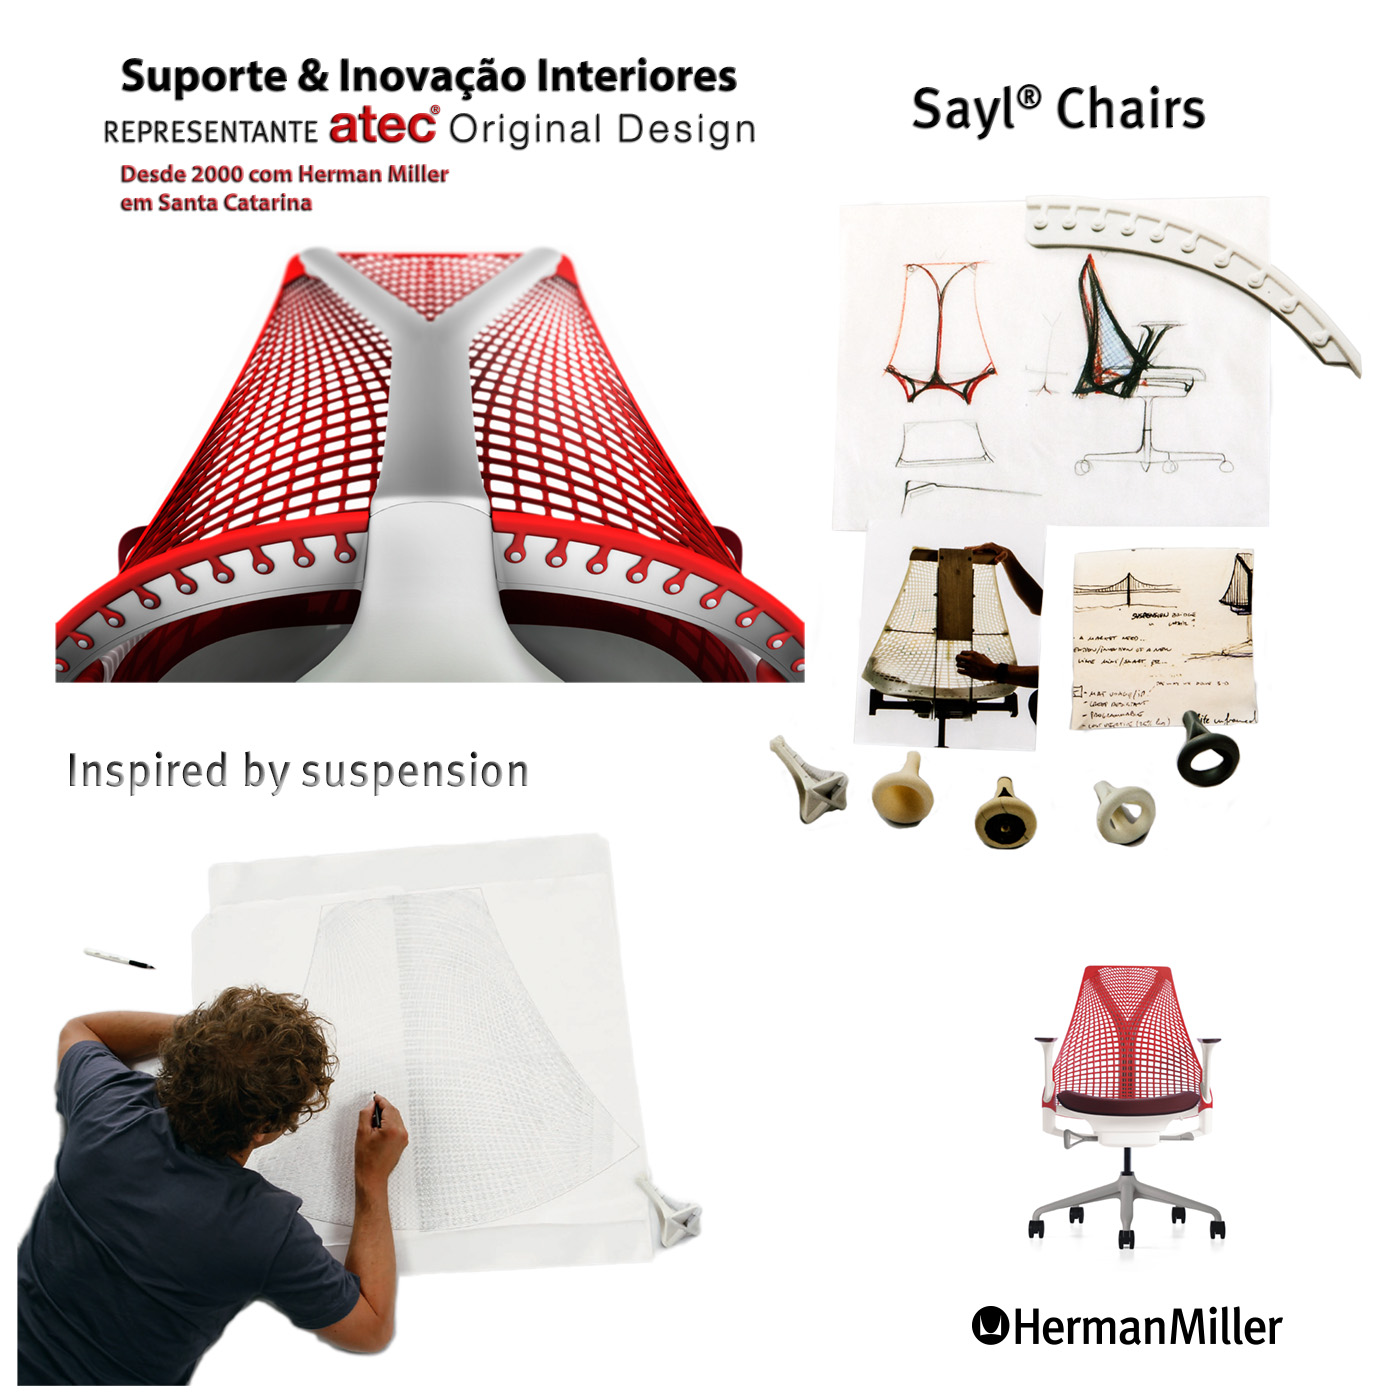 Sayl Chair by Herman Miller || Suporte & Inovação Interiores, representante Atec Original Design - Maior Dealer Herman Miller da América Latina